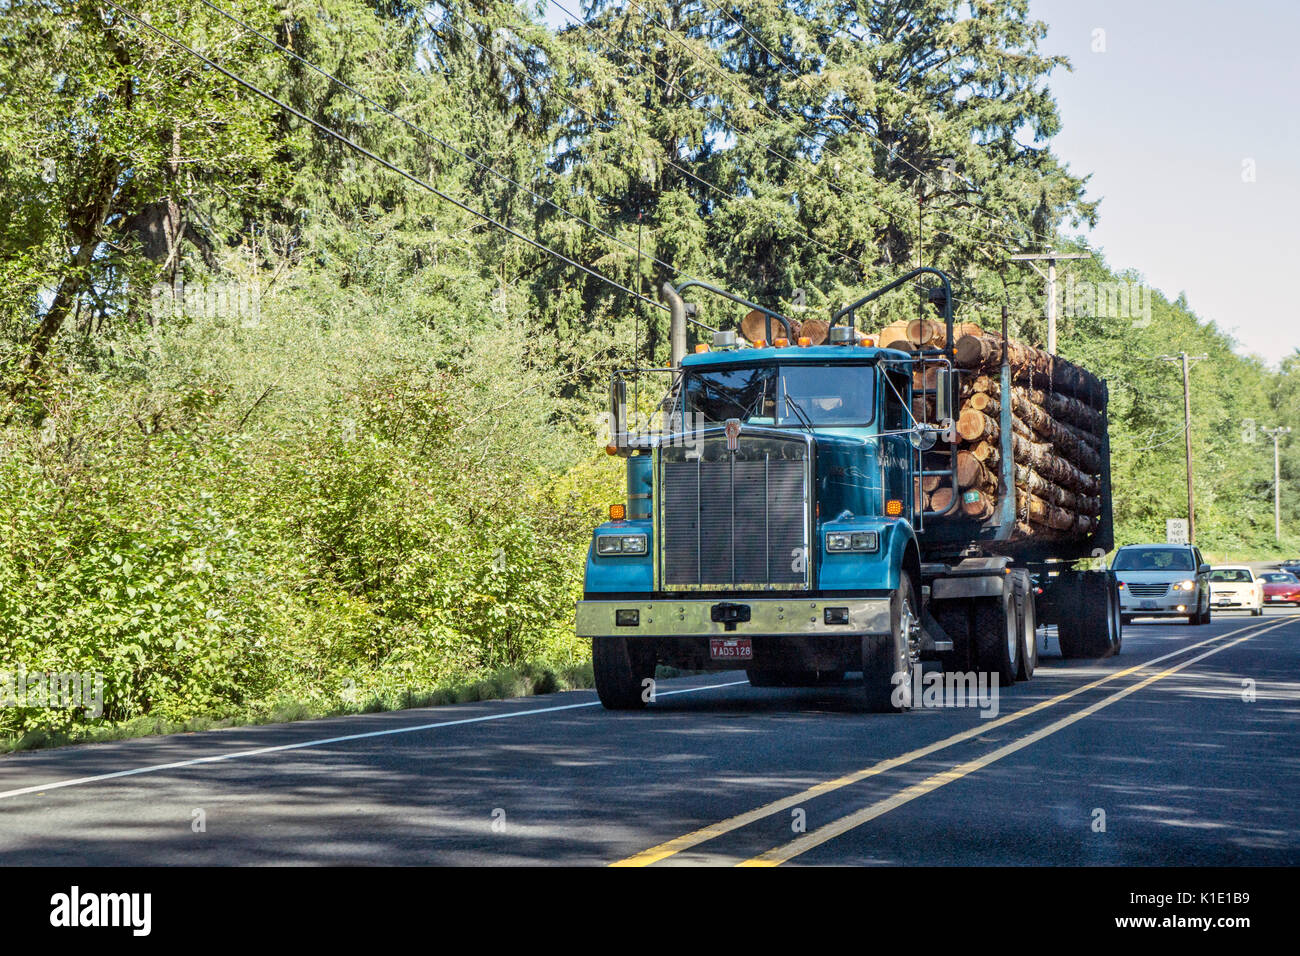 Riesige logging Truck mit hellen blauen Kabine mit frisch geschnittenen Logs Position für Coast Highway geladen hält lange Schlange von Autos auf der Autobahn keine Weitergabe Zone Stockfoto